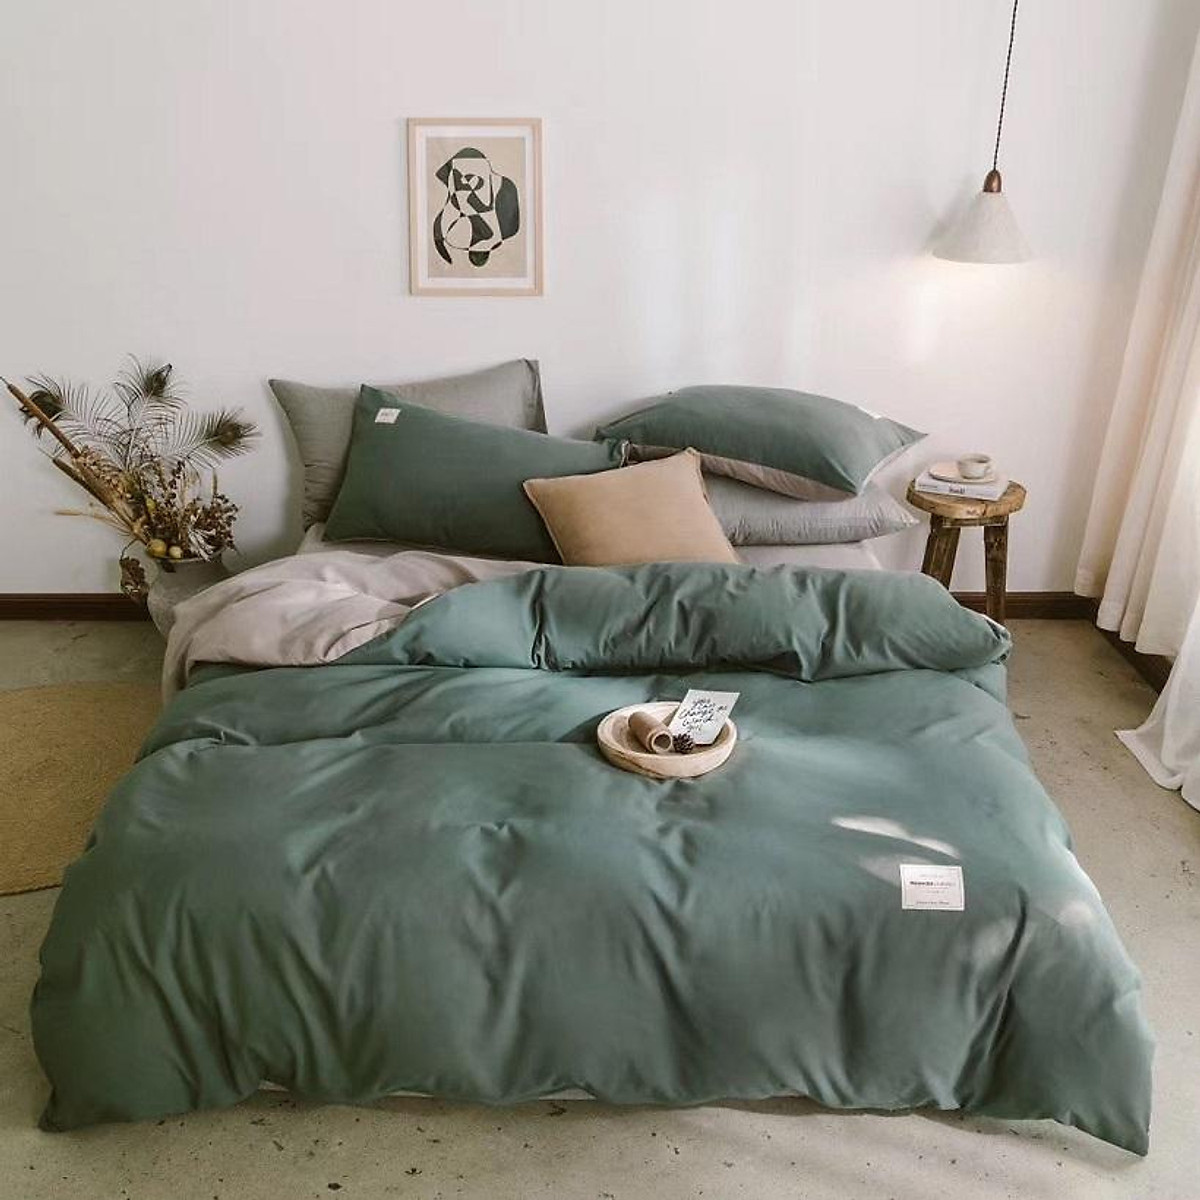 Bộ chăn ga giường Lidaco cotton Tici cao cấp (Nhiều mẫu lựa chọn)